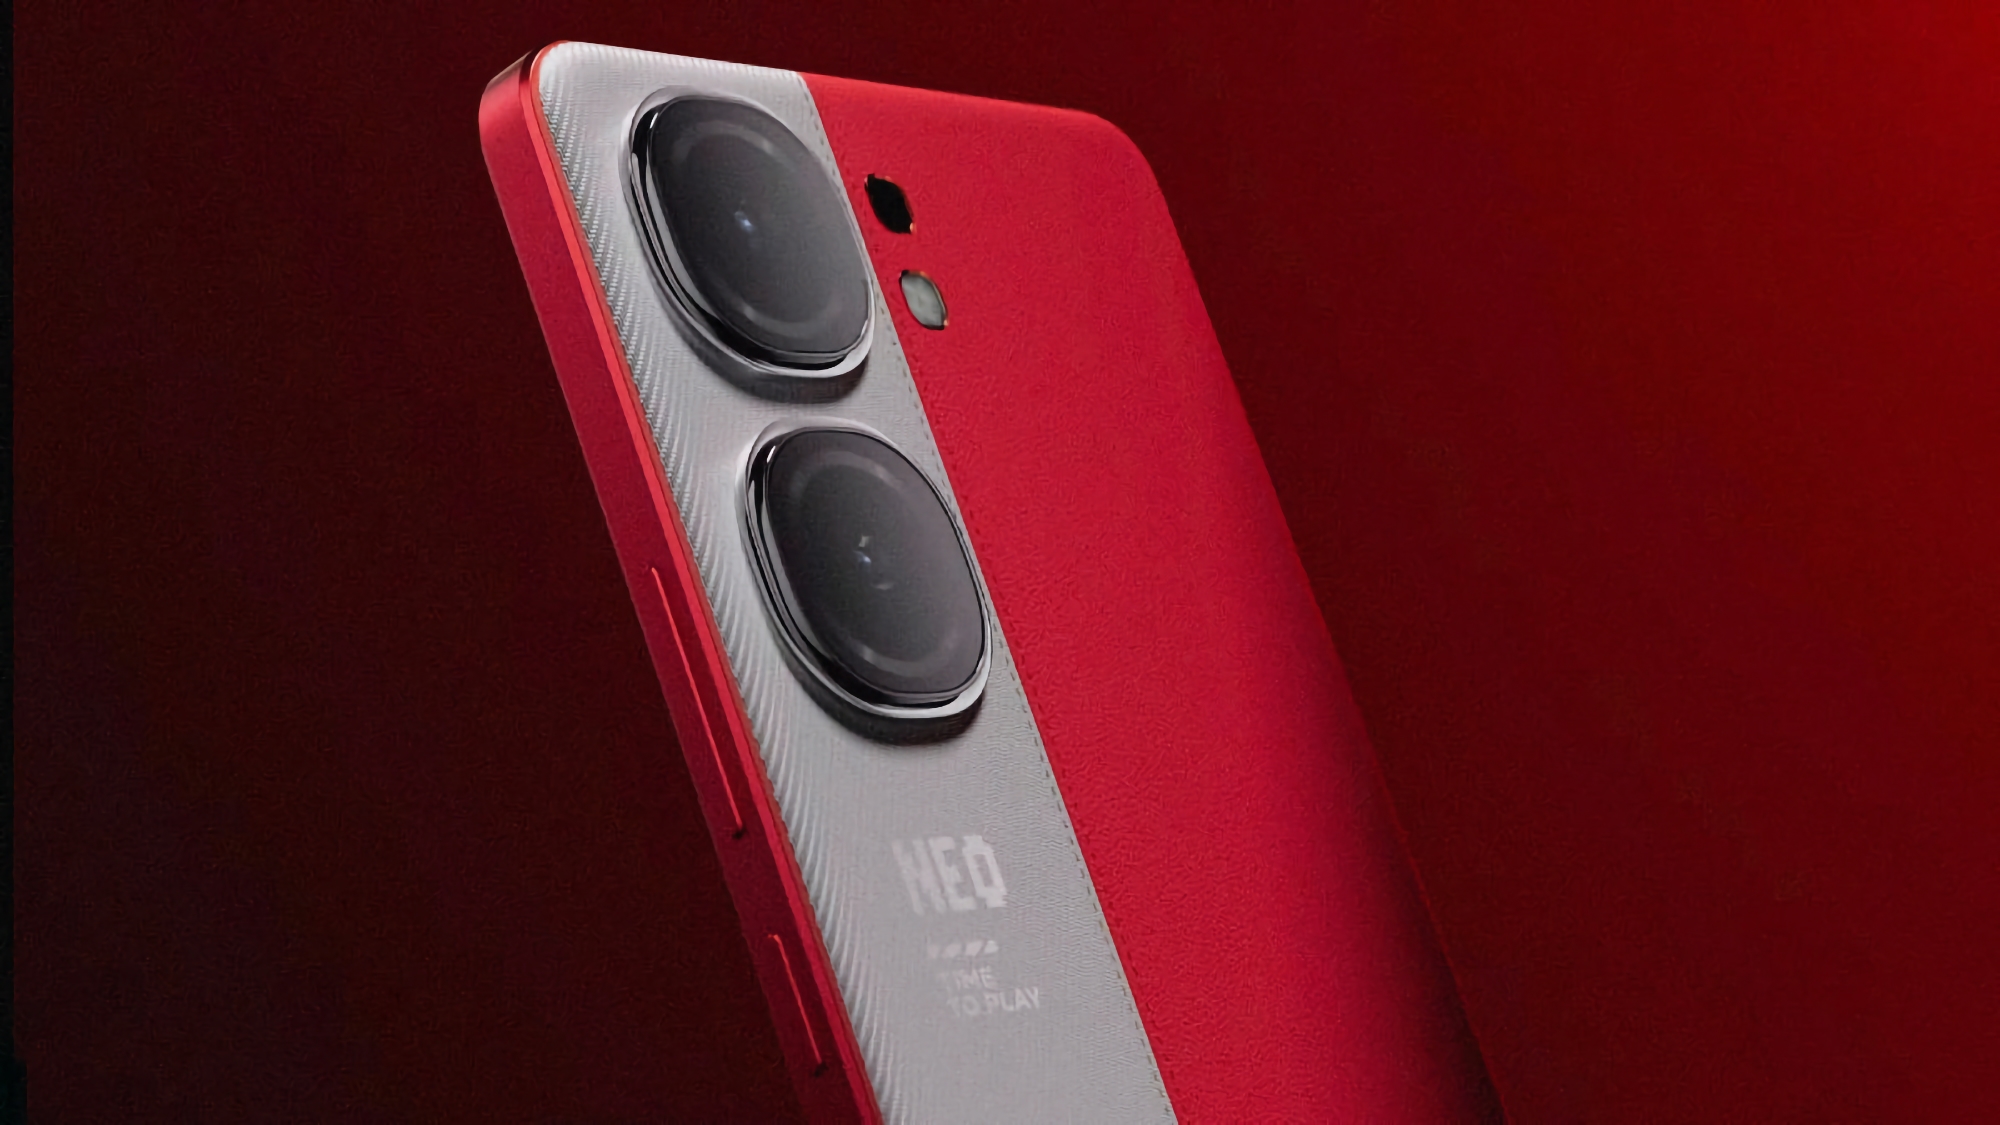 Vivo s'apprête à commercialiser le smartphone iQOO Neo 9s Pro équipé d'une puce Snapdragon 8 Gen 3 et proposé à un prix inférieur à 410 dollars.